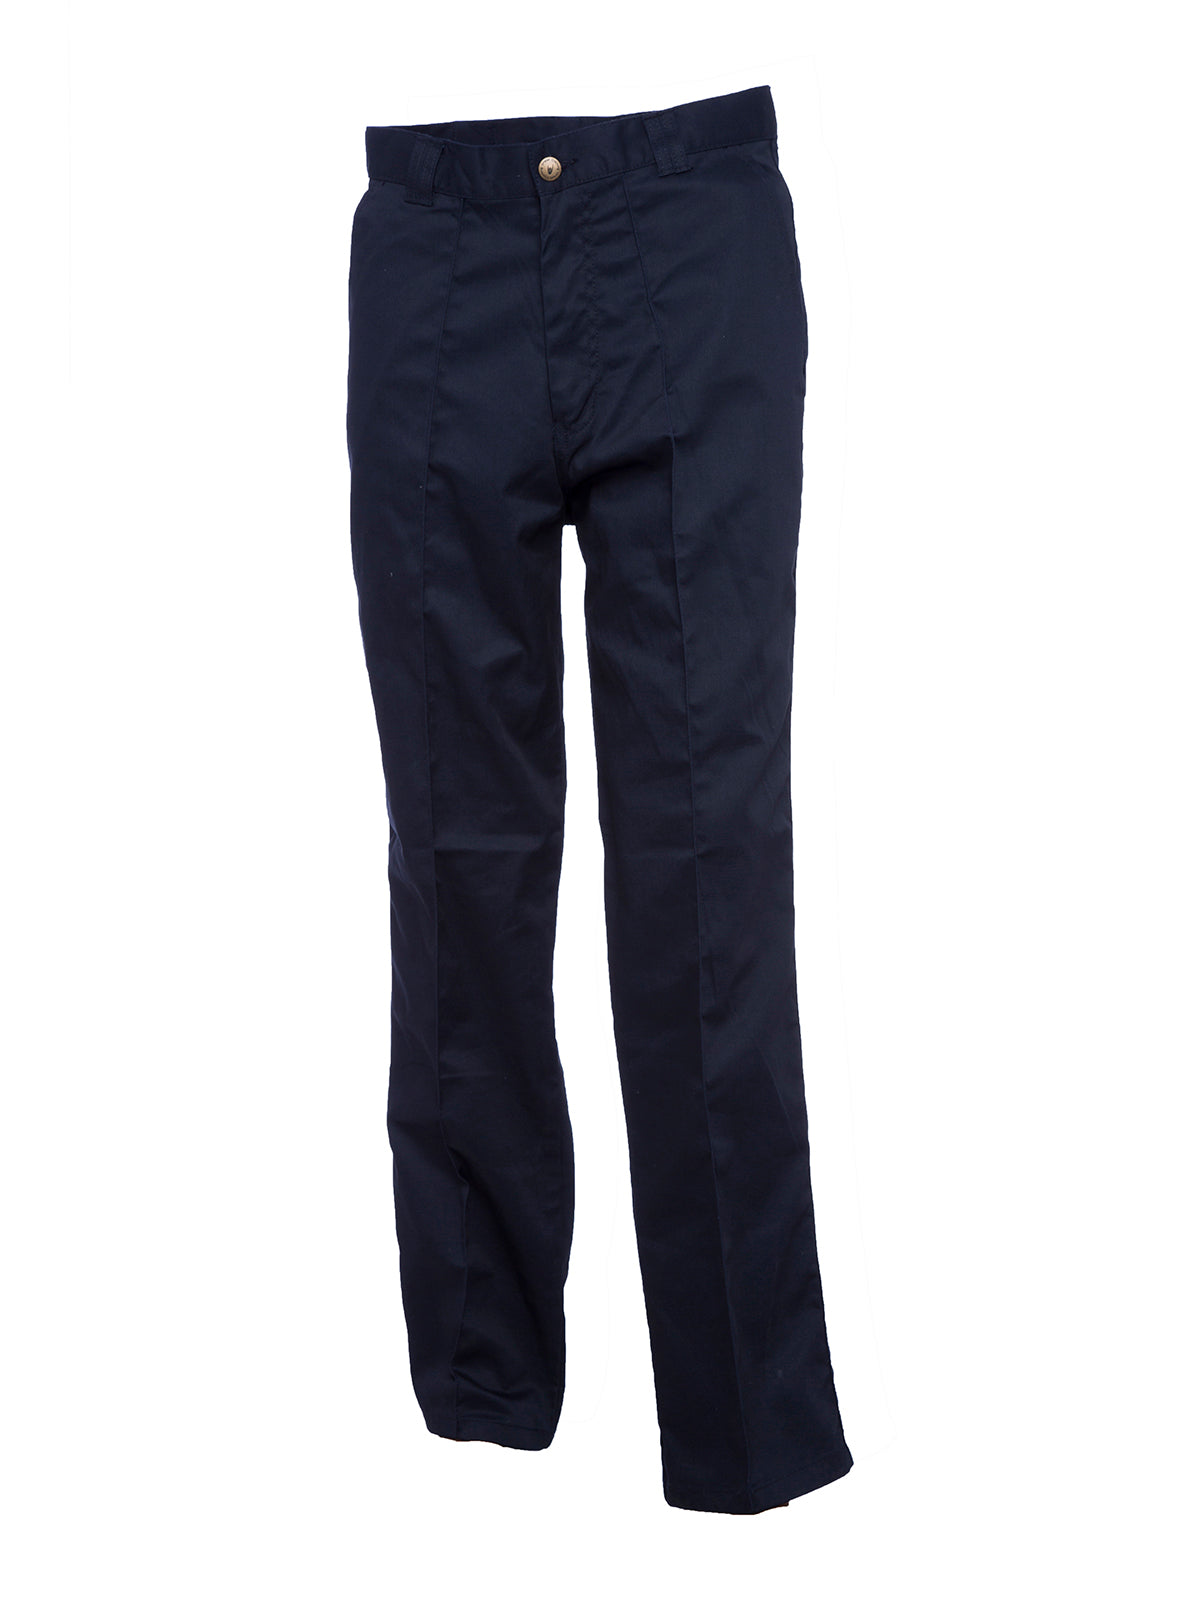 Uneek Workwear Trouser Long UC901L - Navy